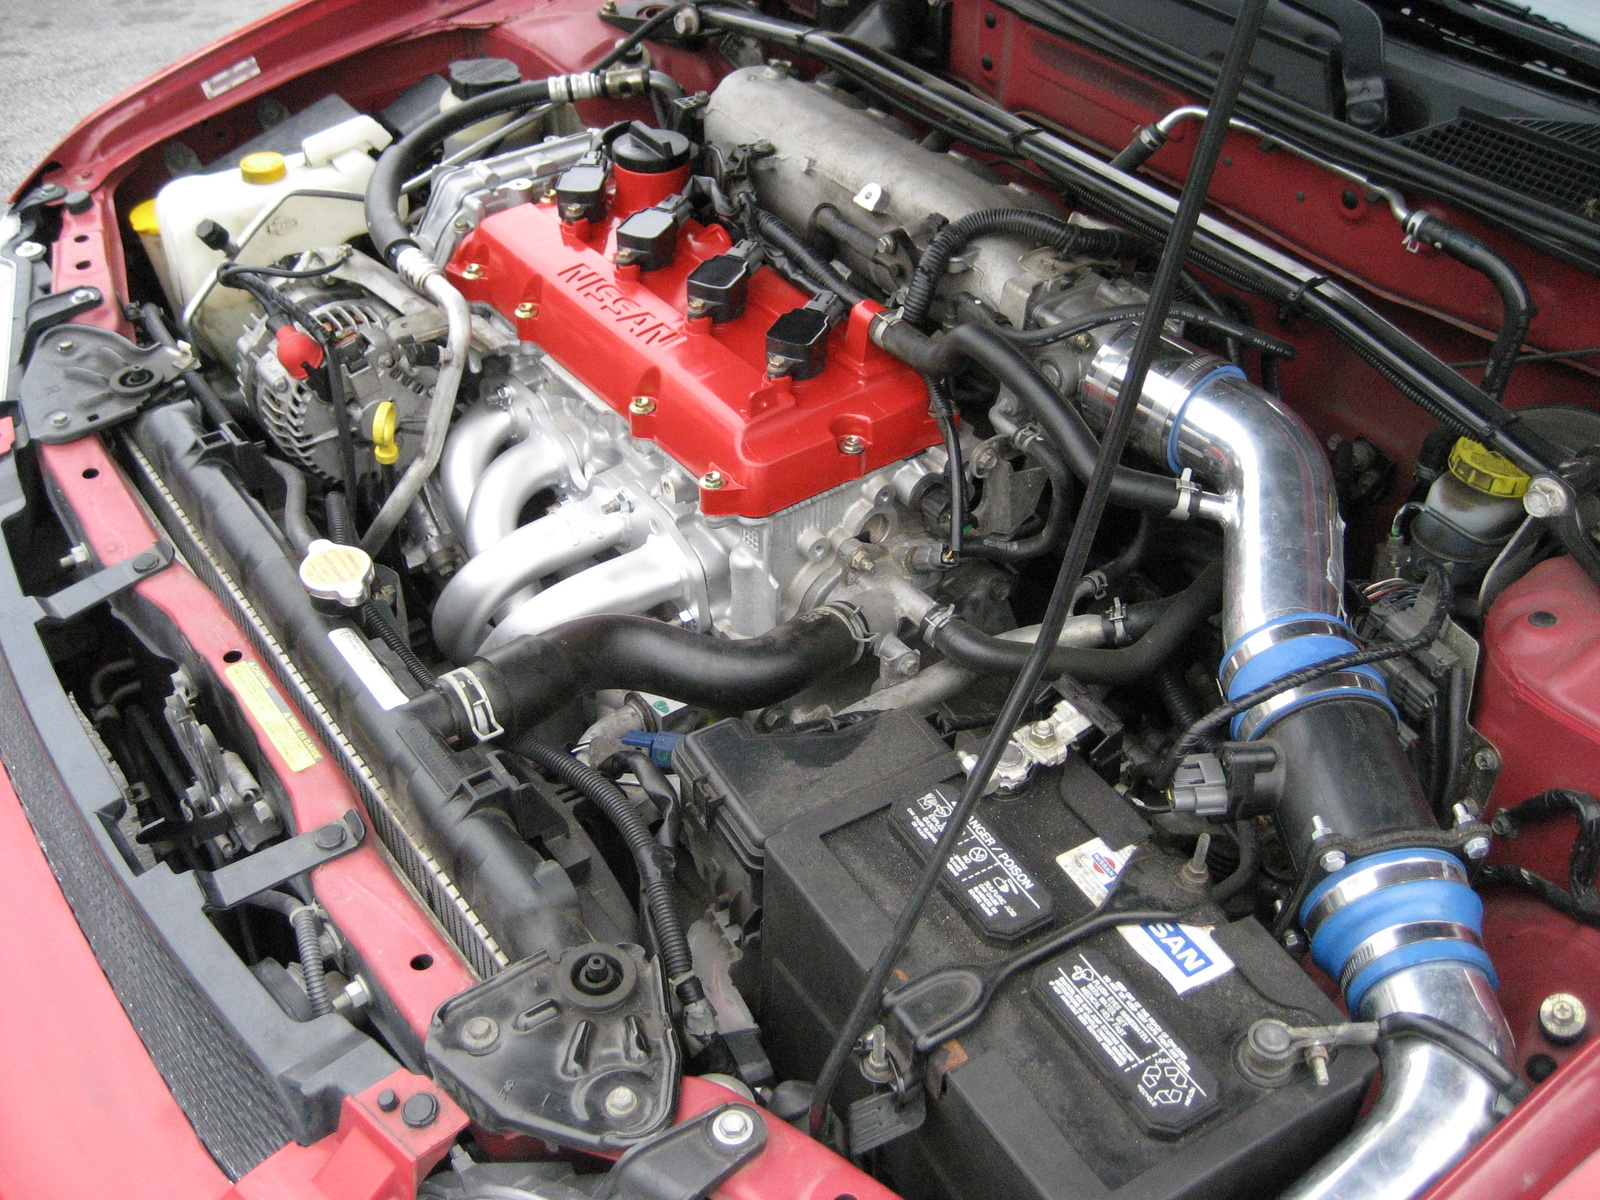 2004 Nissan sentra se-r spec v engine swap